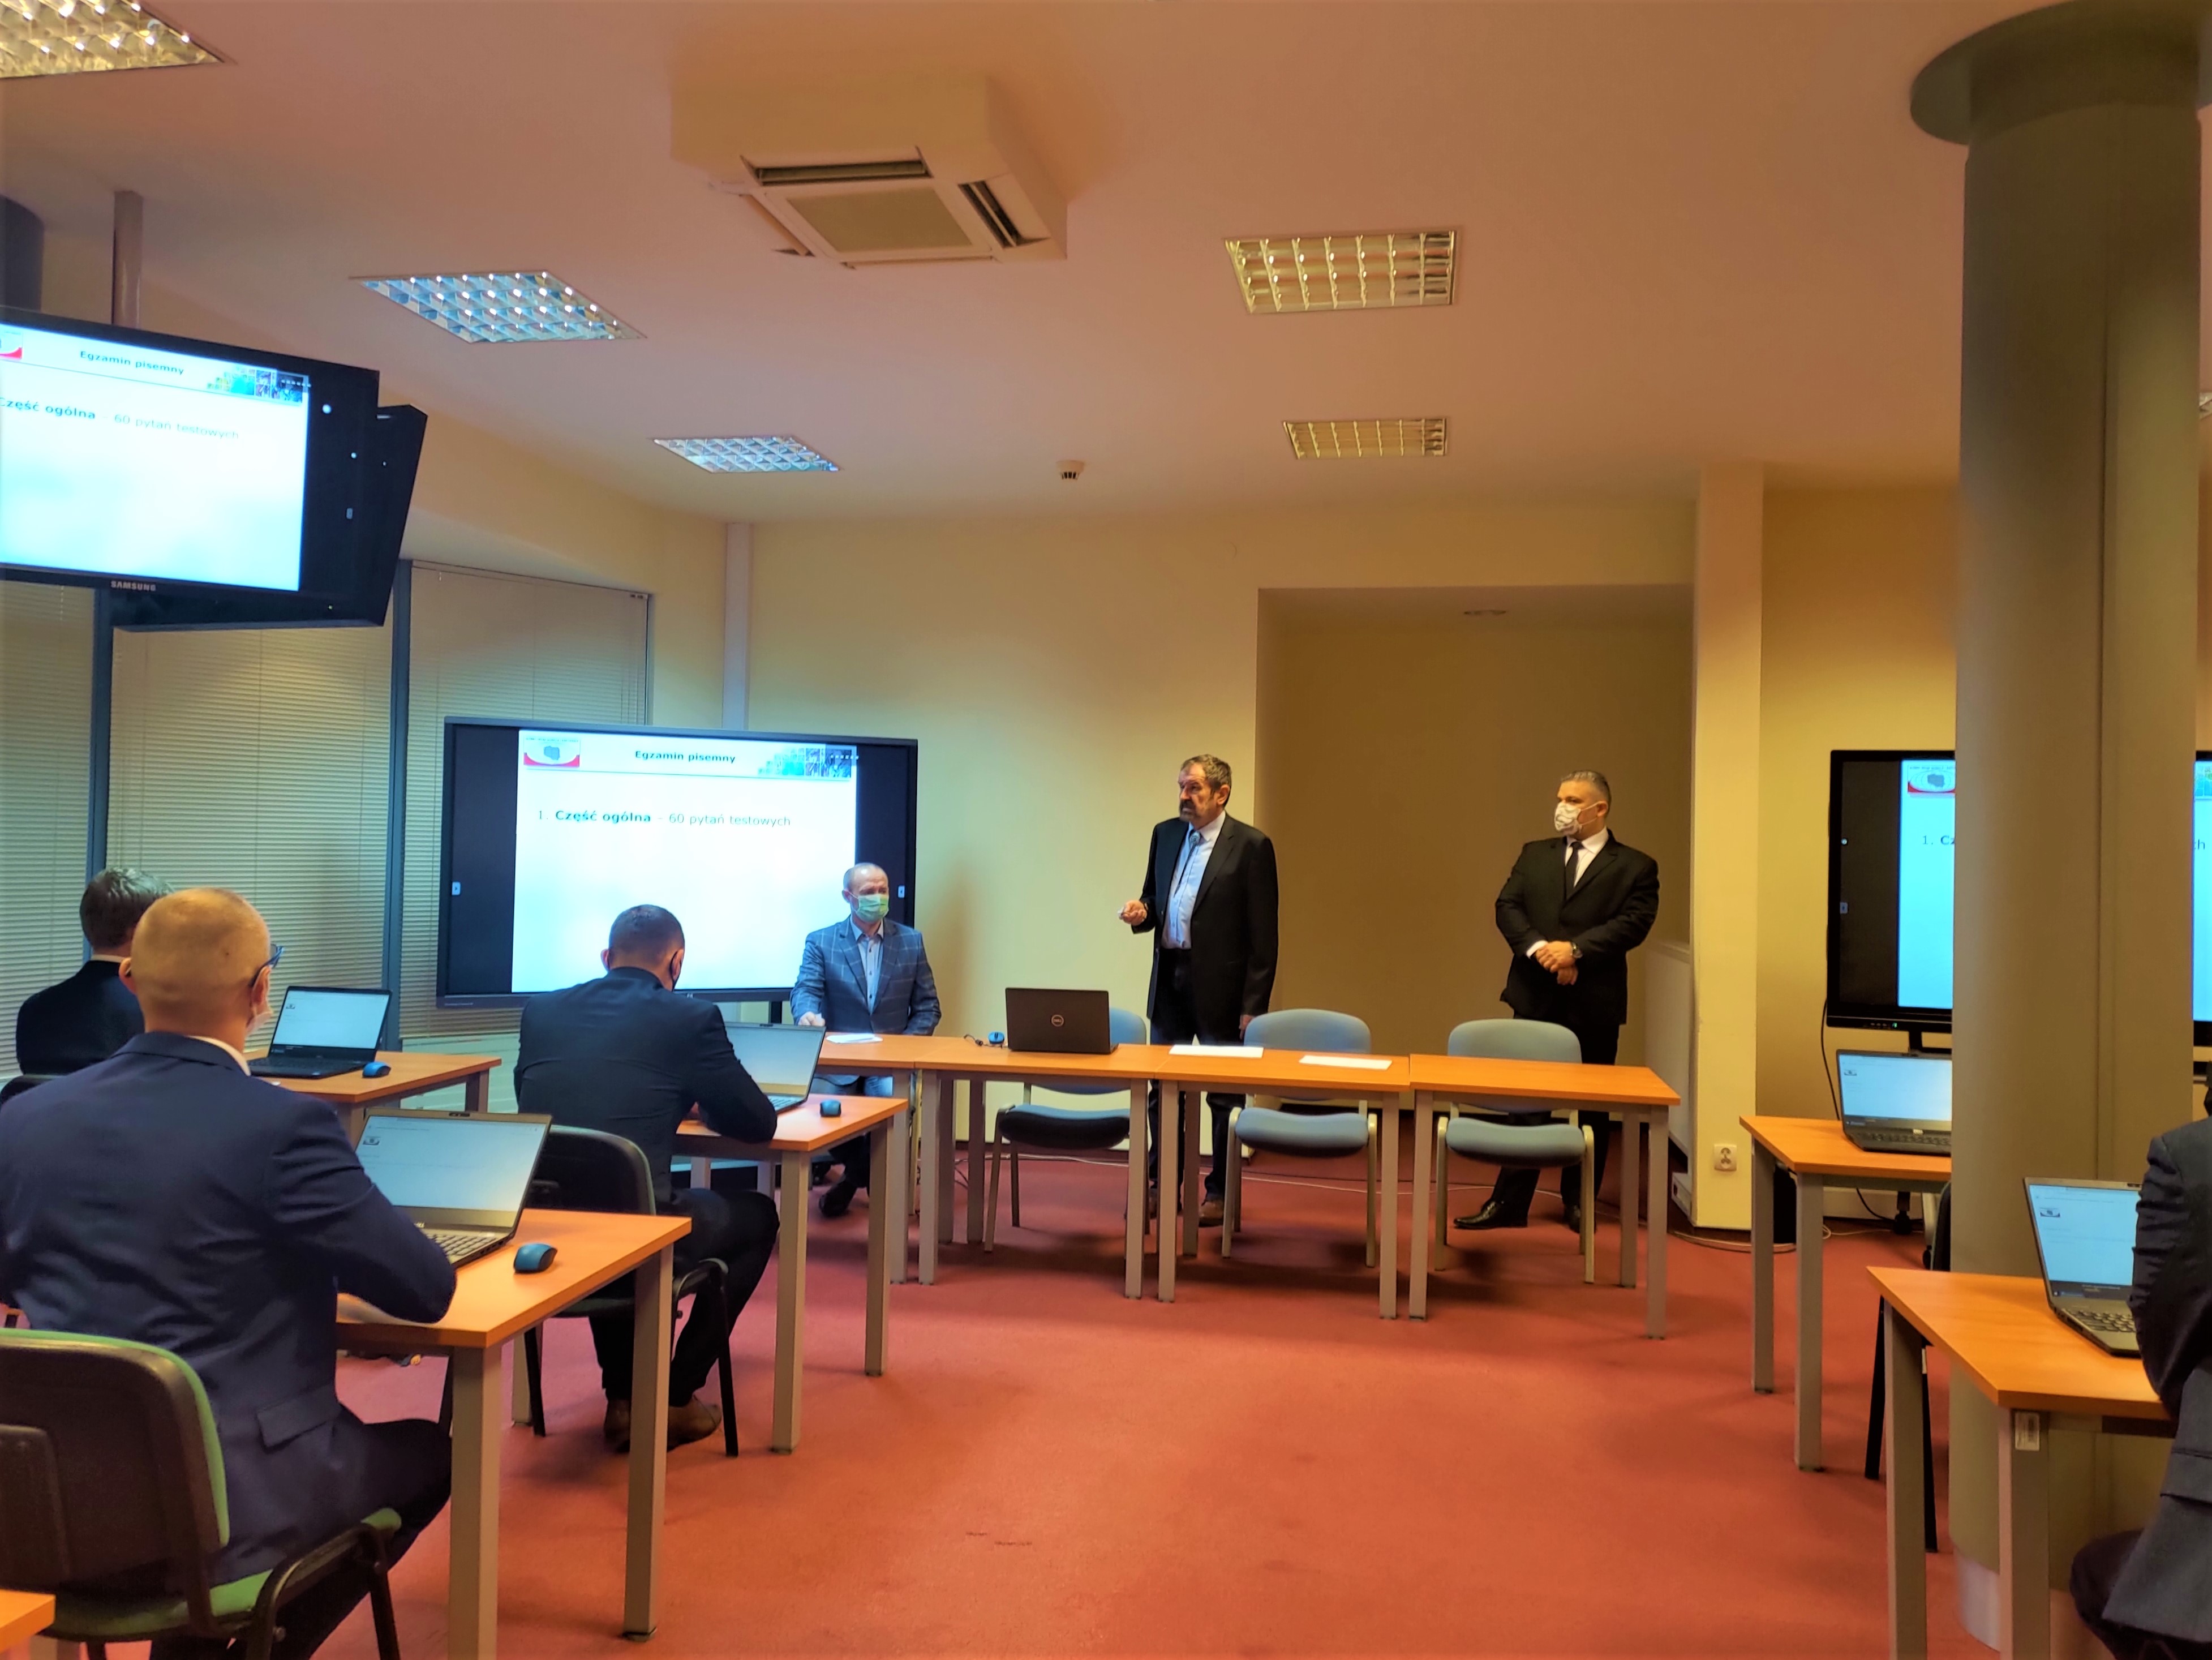 Zdjęcie przedstawia salę egzaminacyjną z członkami Komisji egzaminacyjnej i osobami przystępującymi do egzaminu siedzącymi pojedynczo przed laptopami